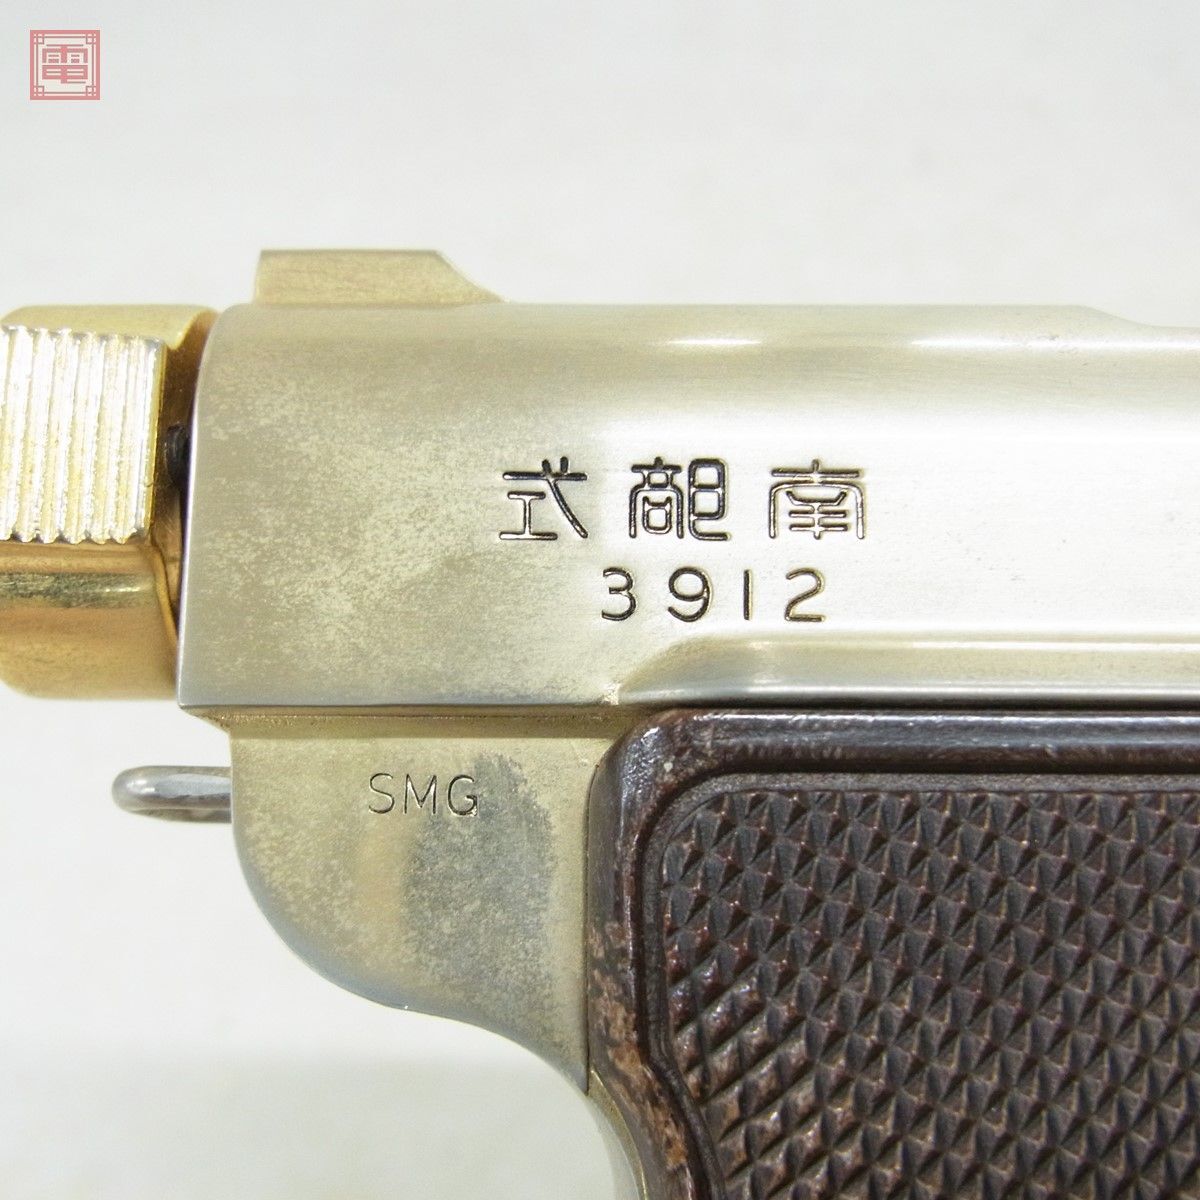 ACG металлический модель оружия юг часть тип маленький размер автоматика . ружье baby наан bSMG текущее состояние товар [20